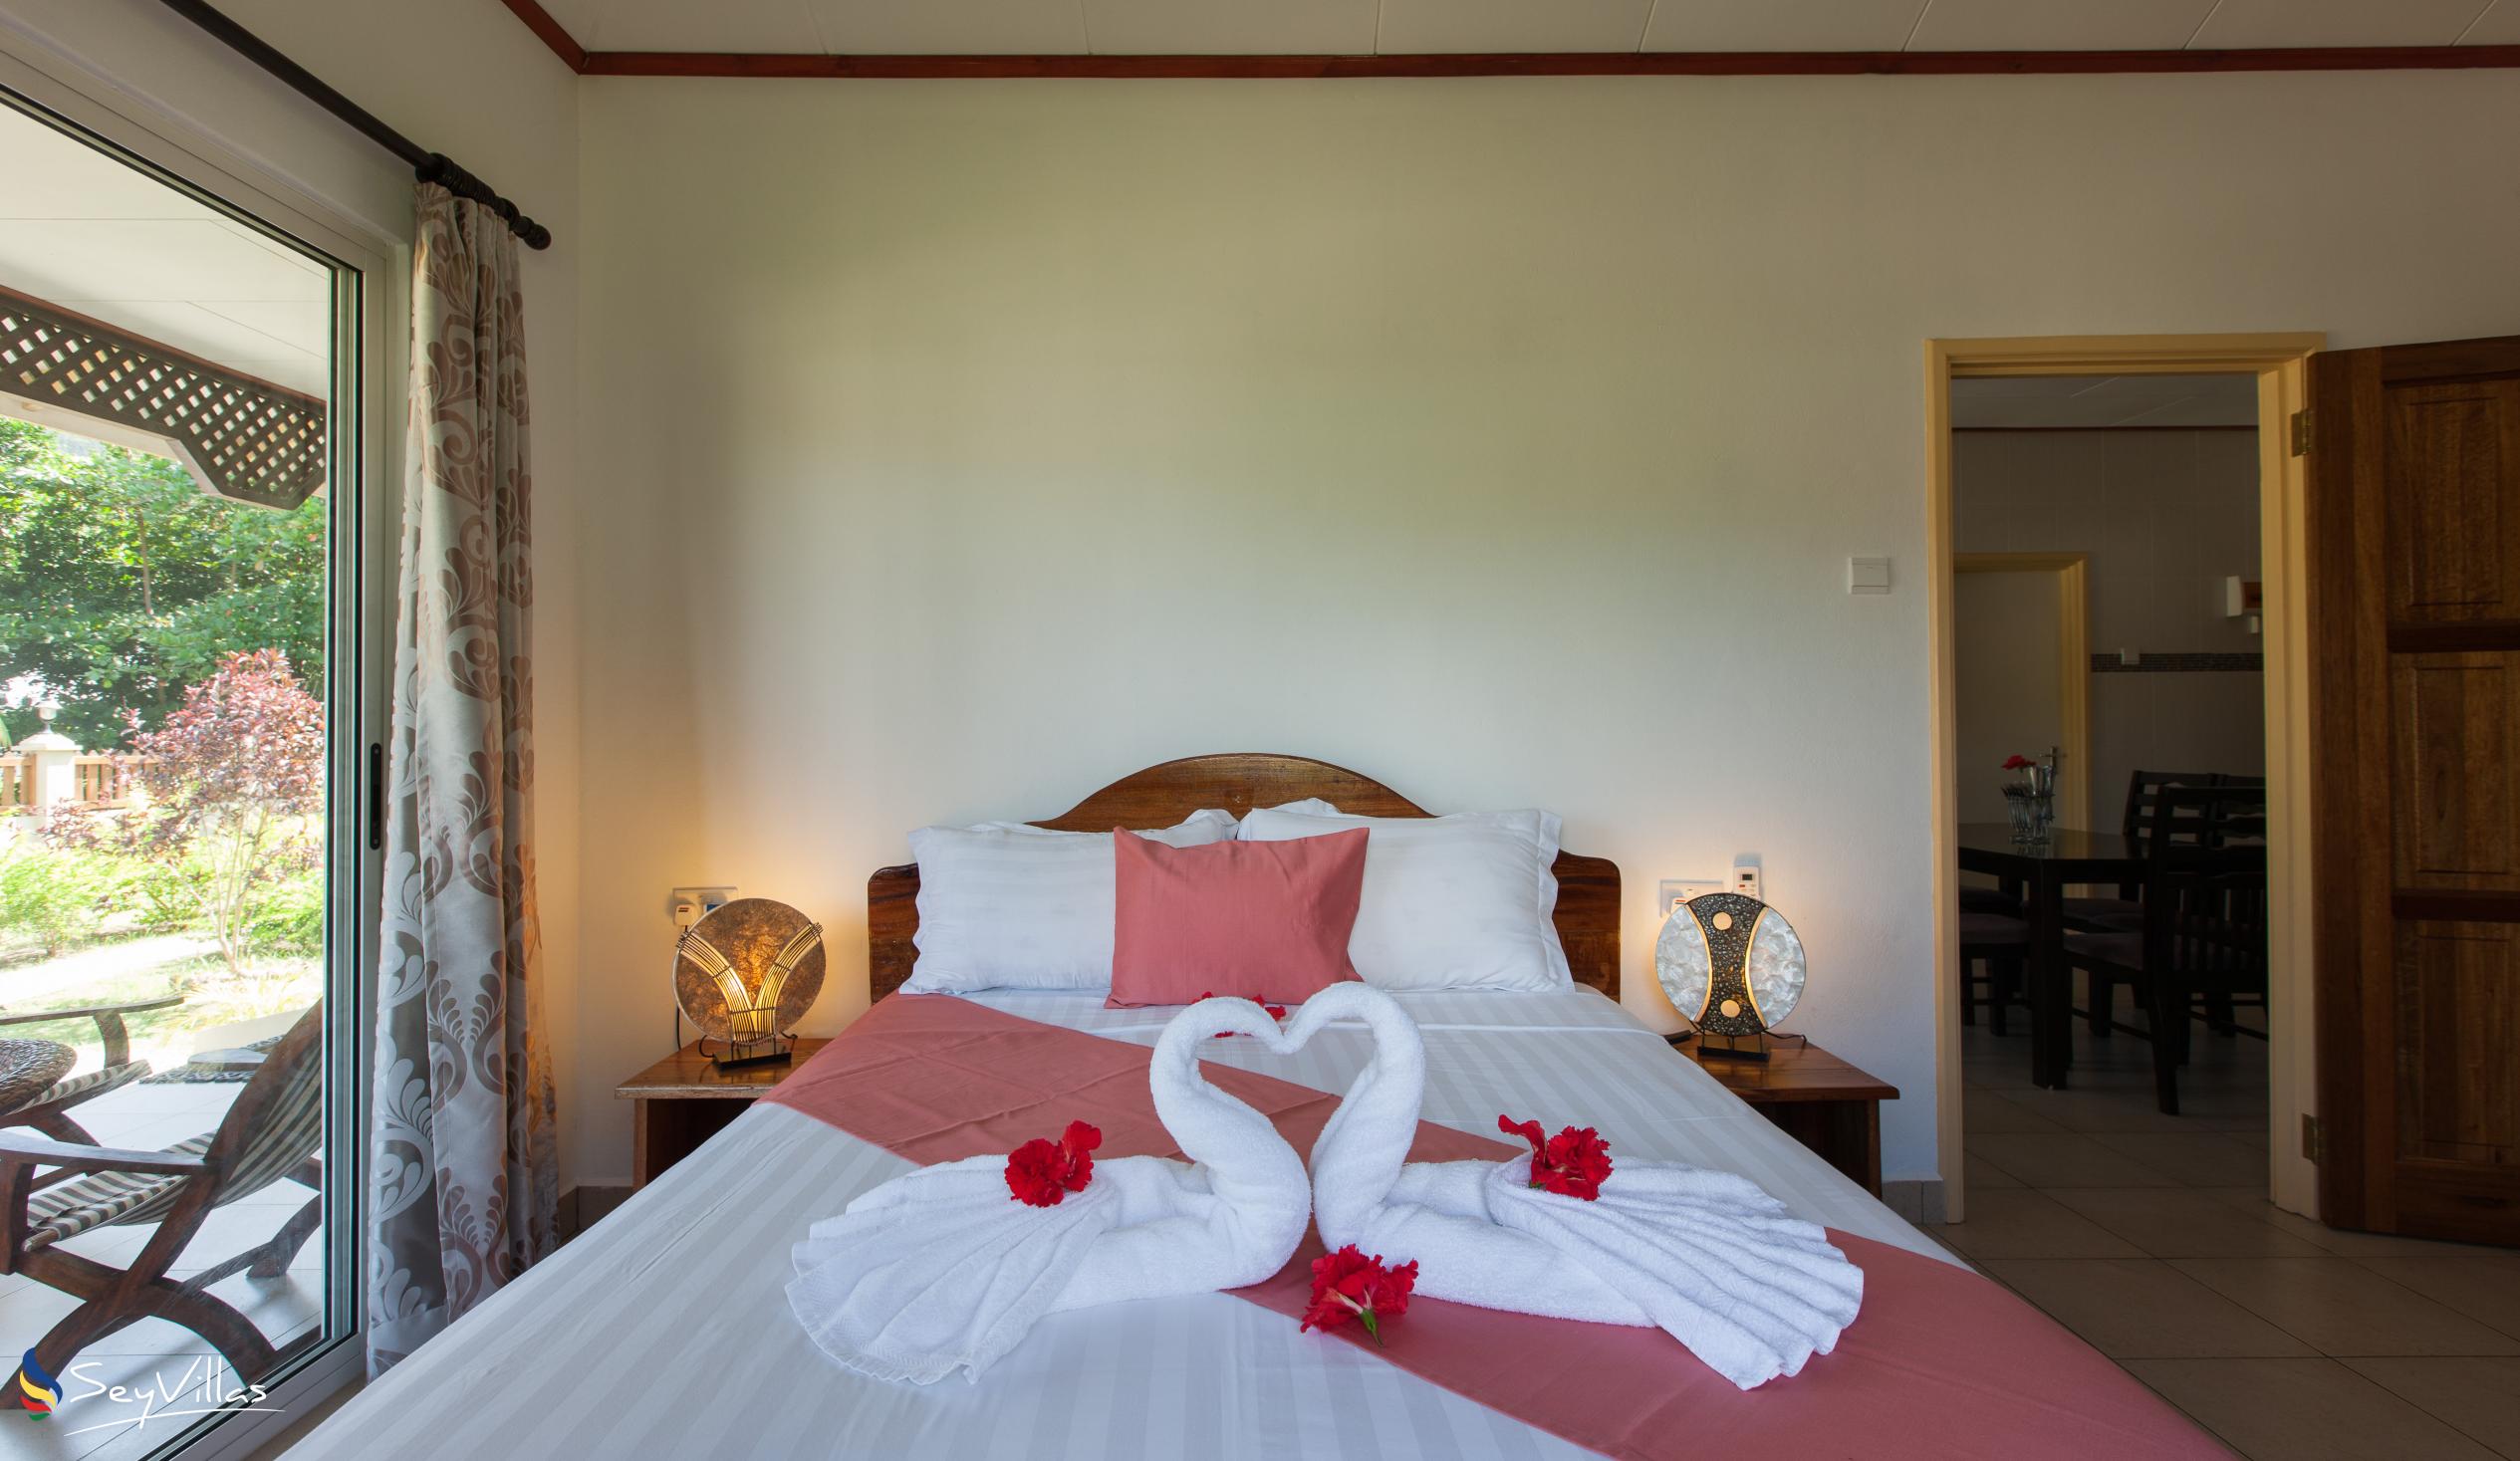 Photo 58: Hostellerie La Digue - 2-Bedroom Chalet - La Digue (Seychelles)